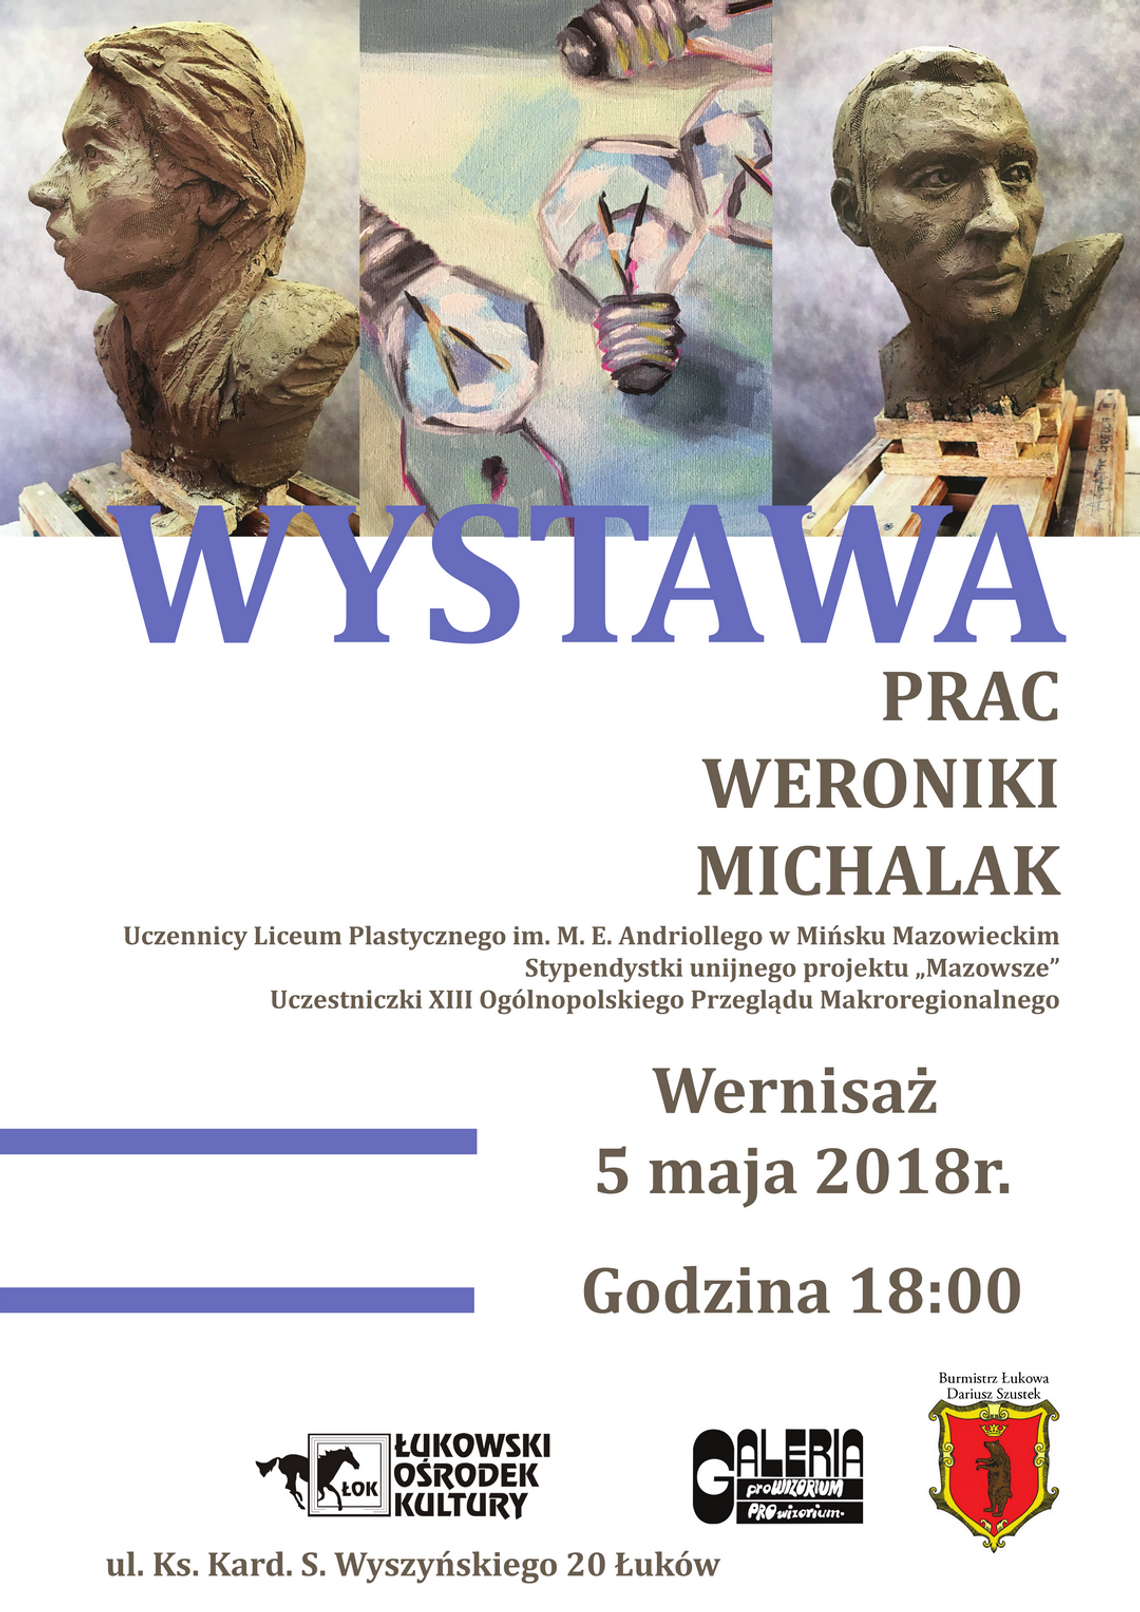 Wystawa prac Weroniki Michalak w Galerii PROwizorium ŁOK /5 maja-26 maja/